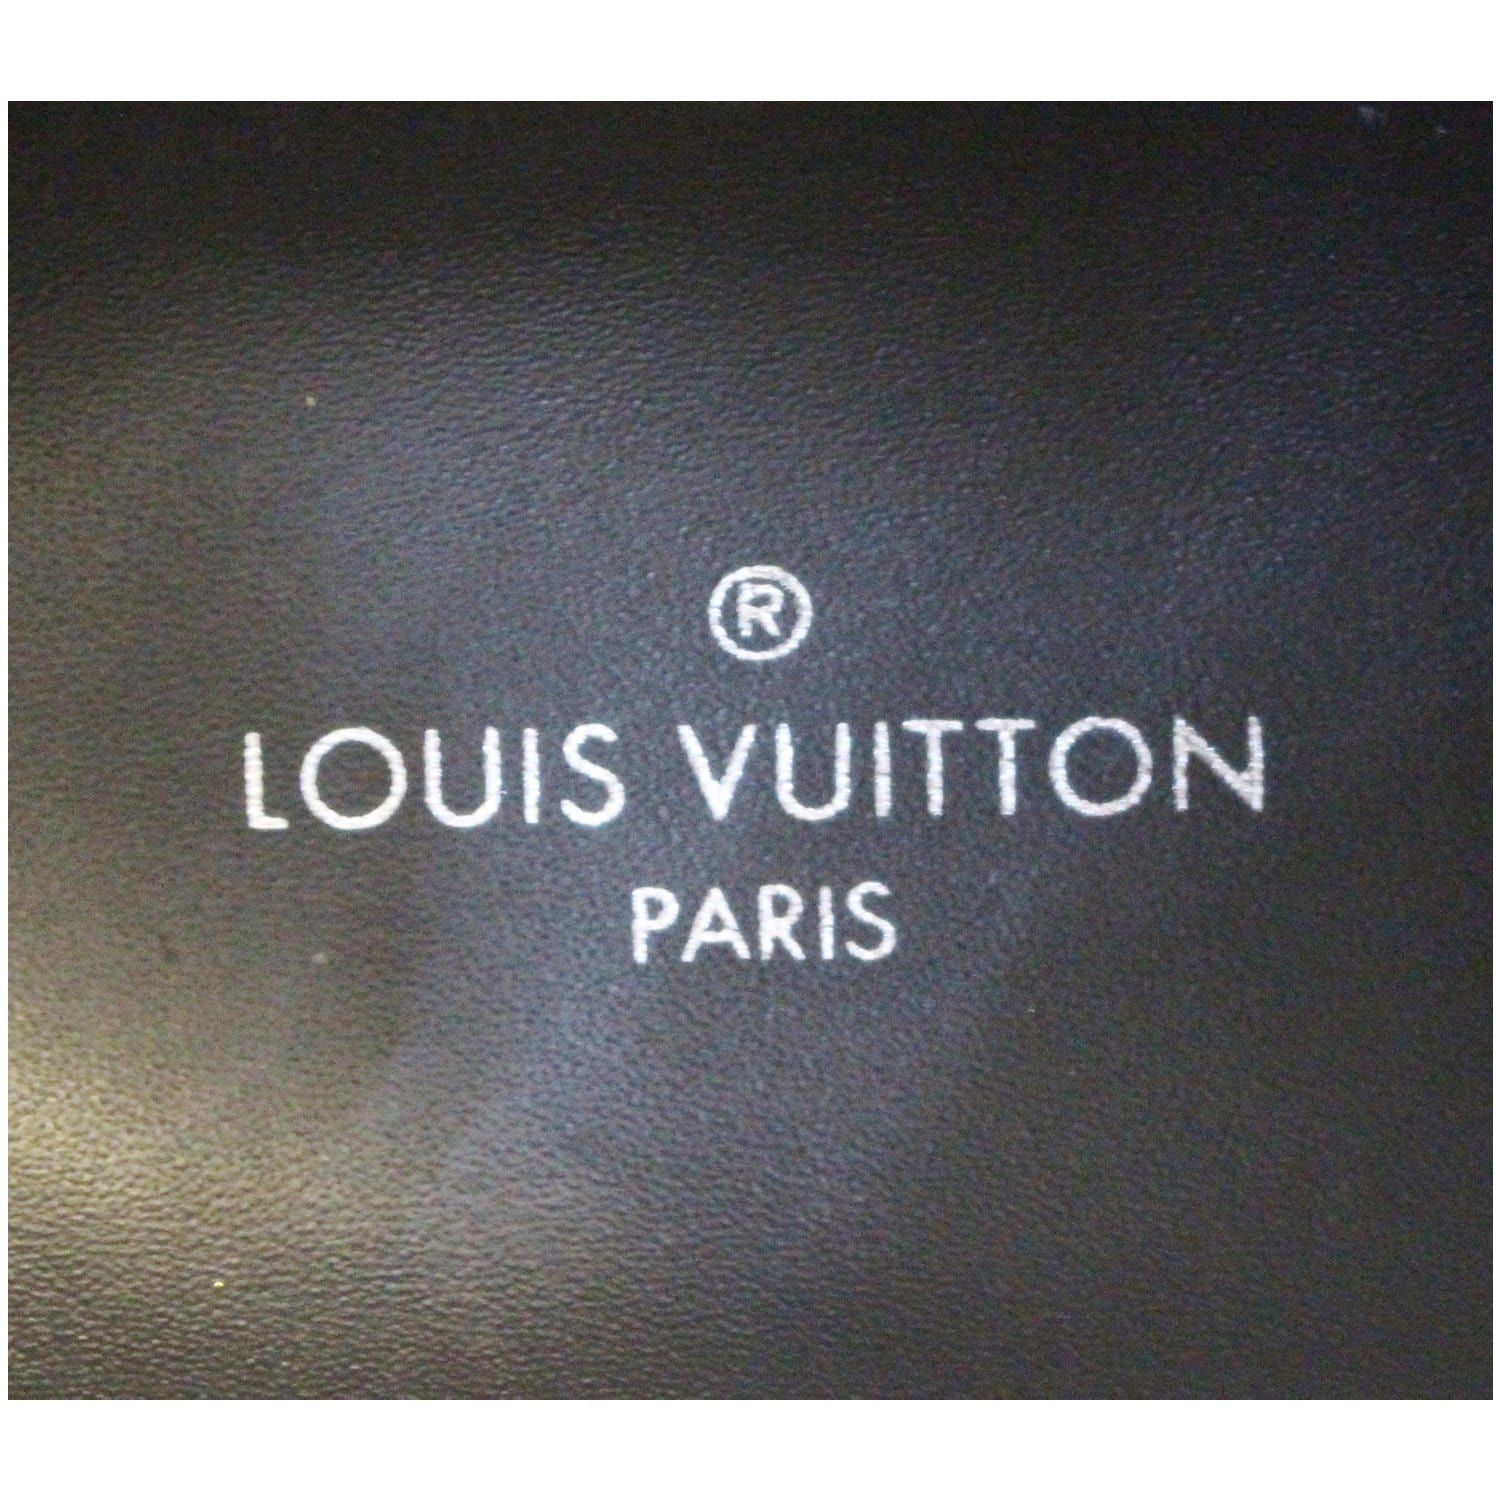 ₩24,221에서 최신 여름 LOUIS VUITTON 브랜드 남성 패션 T 셔츠 폴로는